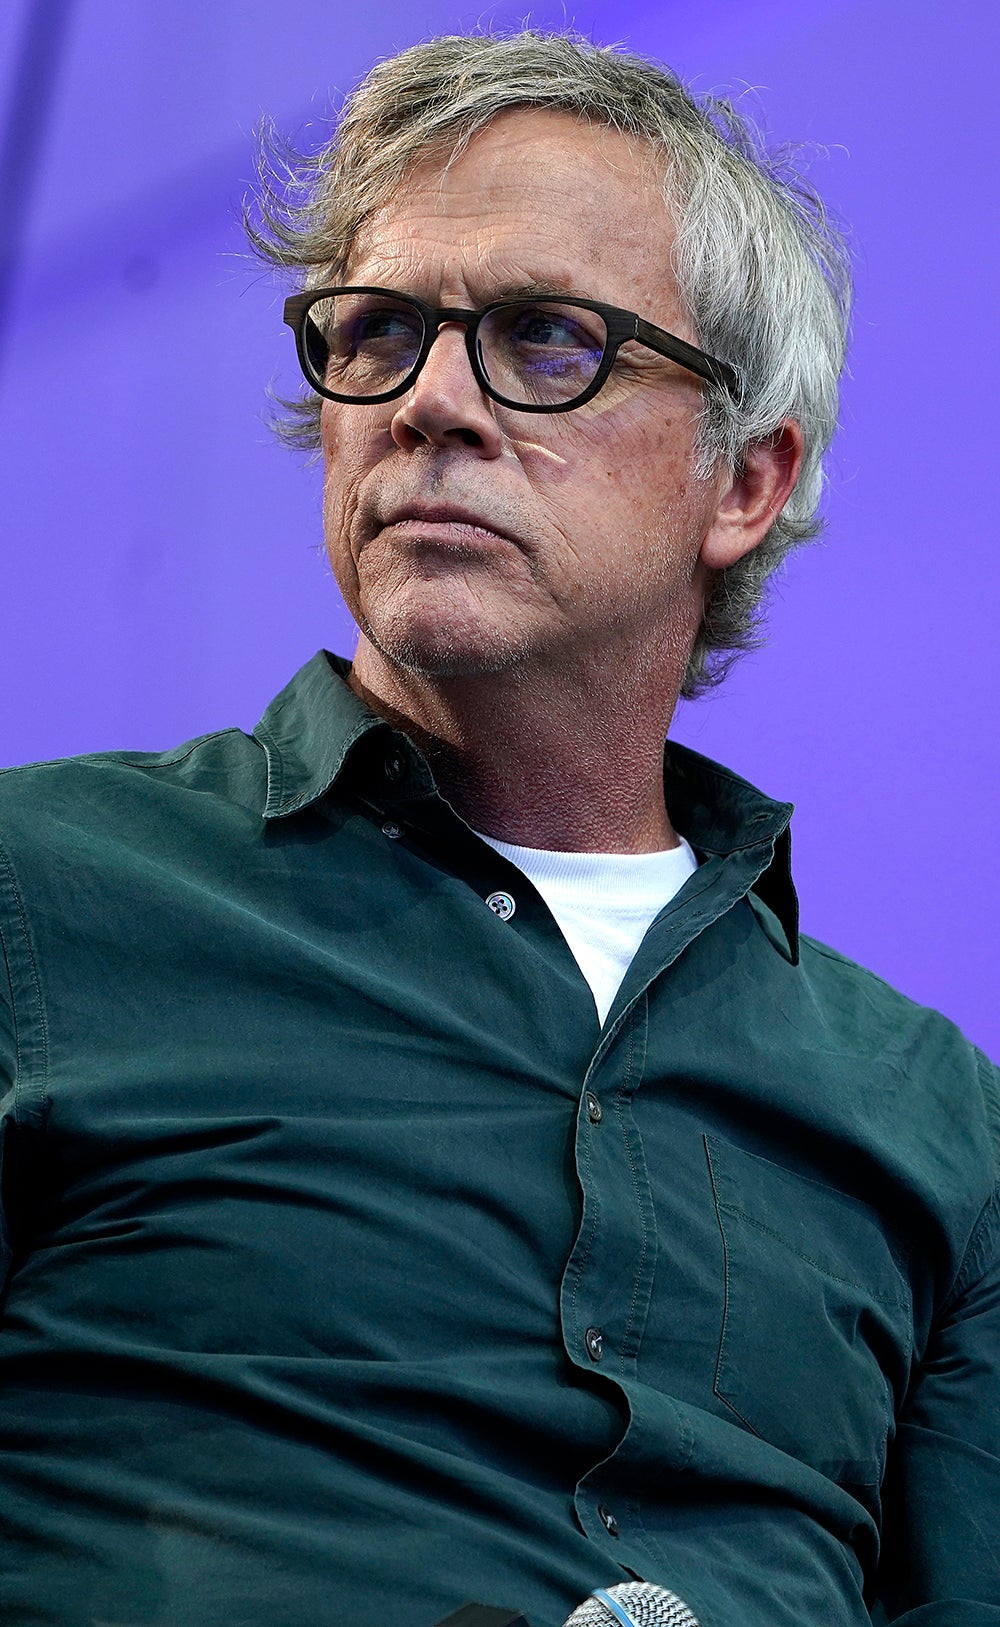 Filmmaker Todd Haynes at the New York Film Festival in October